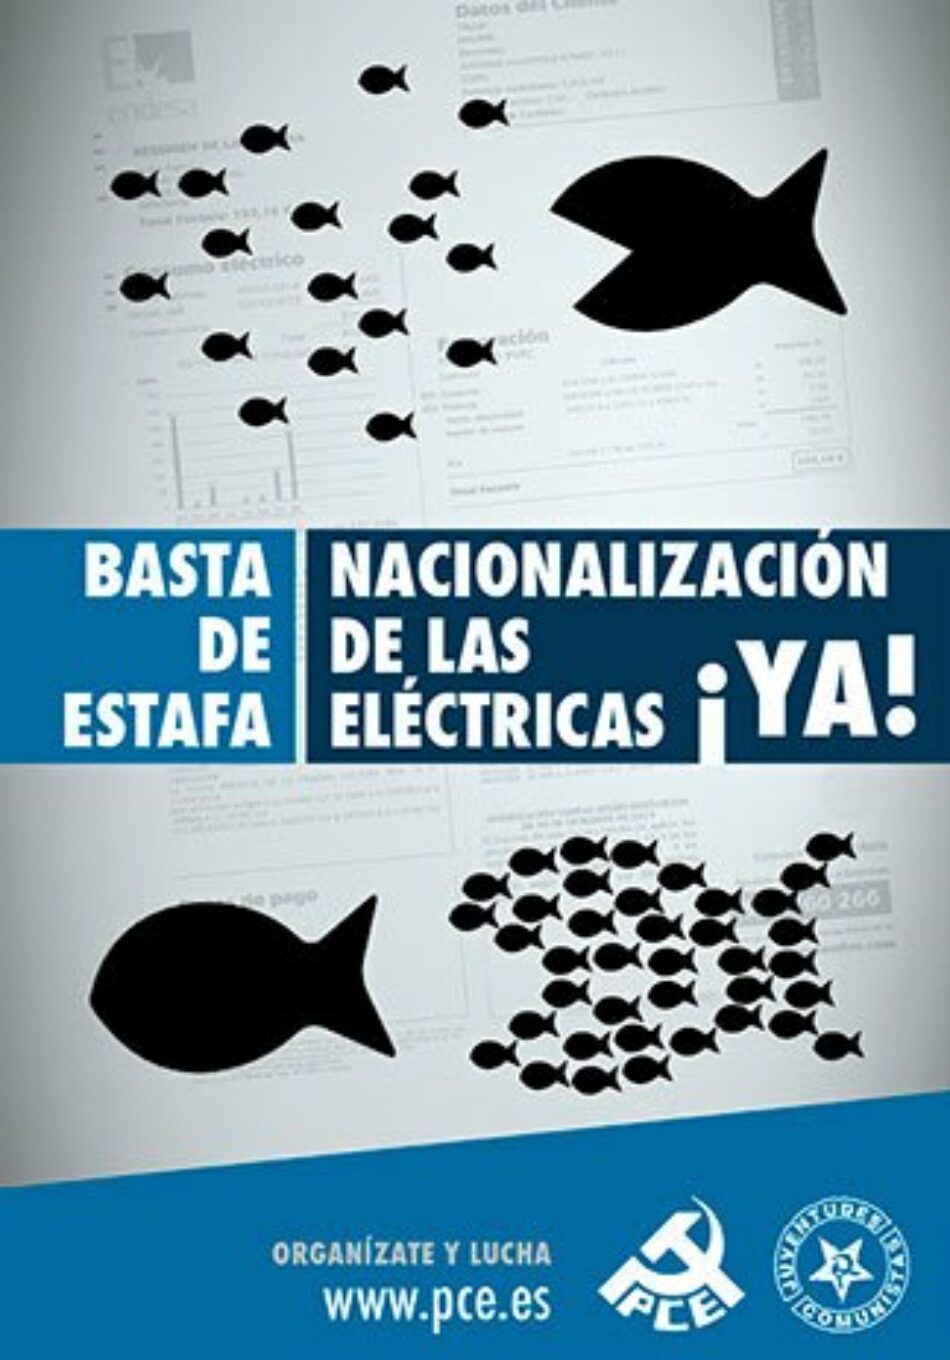 En marcha una campaña por la nacionalización de las eléctricas y contra la pobreza energética en Murcia